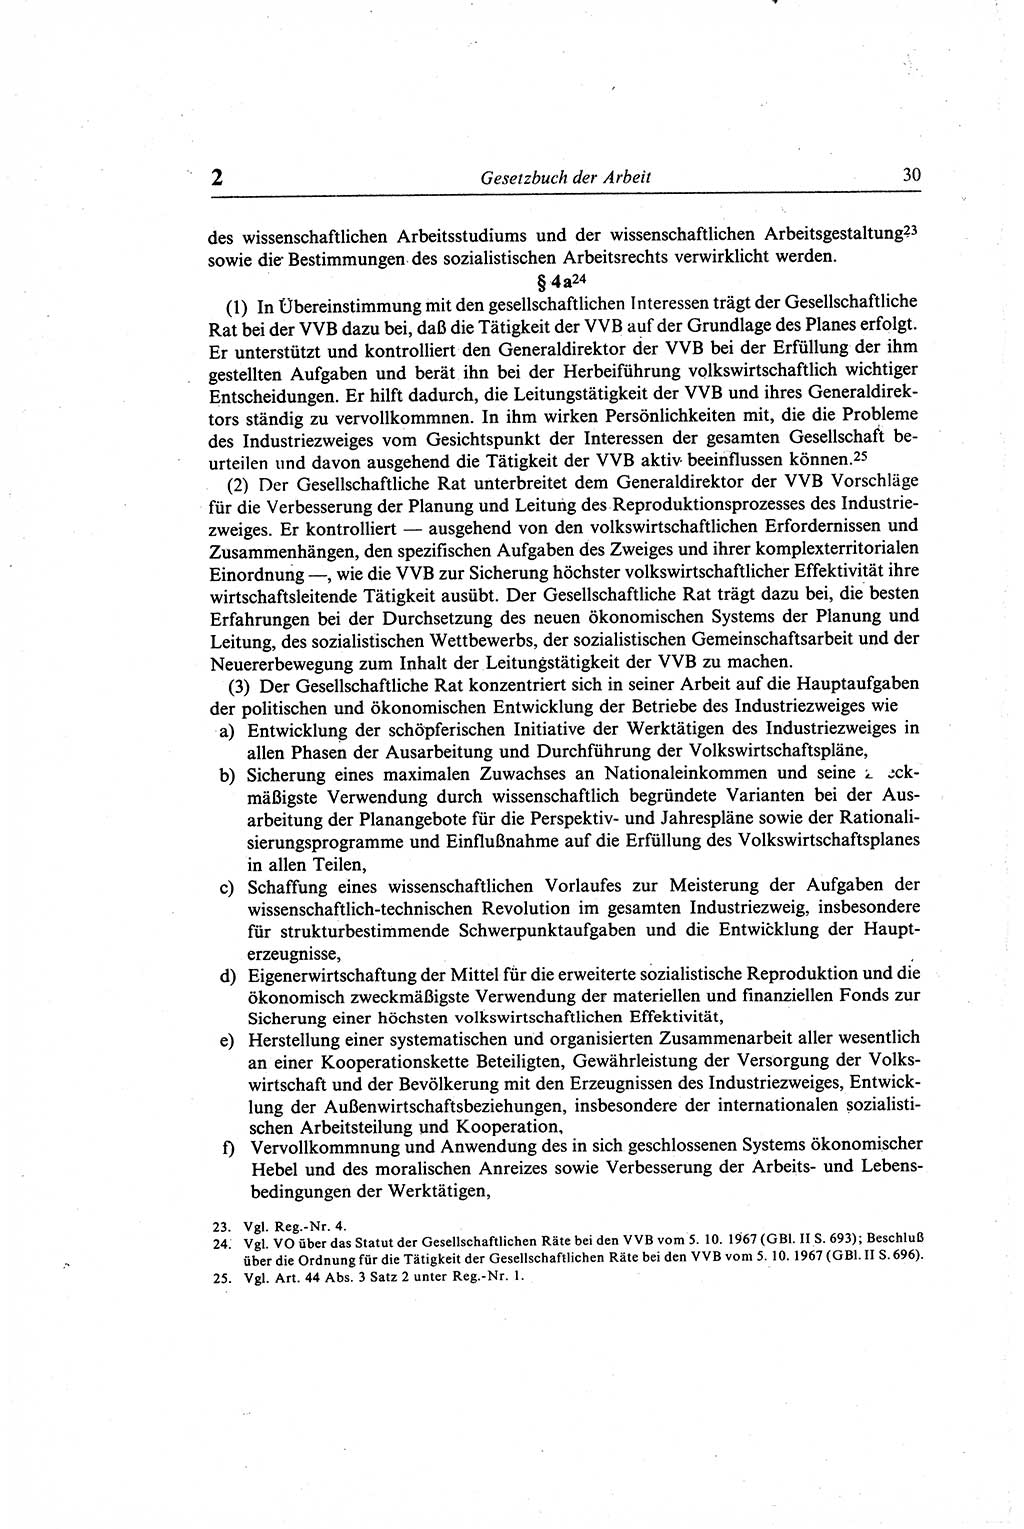 Gesetzbuch der Arbeit (GBA) und andere ausgewählte rechtliche Bestimmungen [Deutsche Demokratische Republik (DDR)] 1968, Seite 30 (GBA DDR 1968, S. 30)